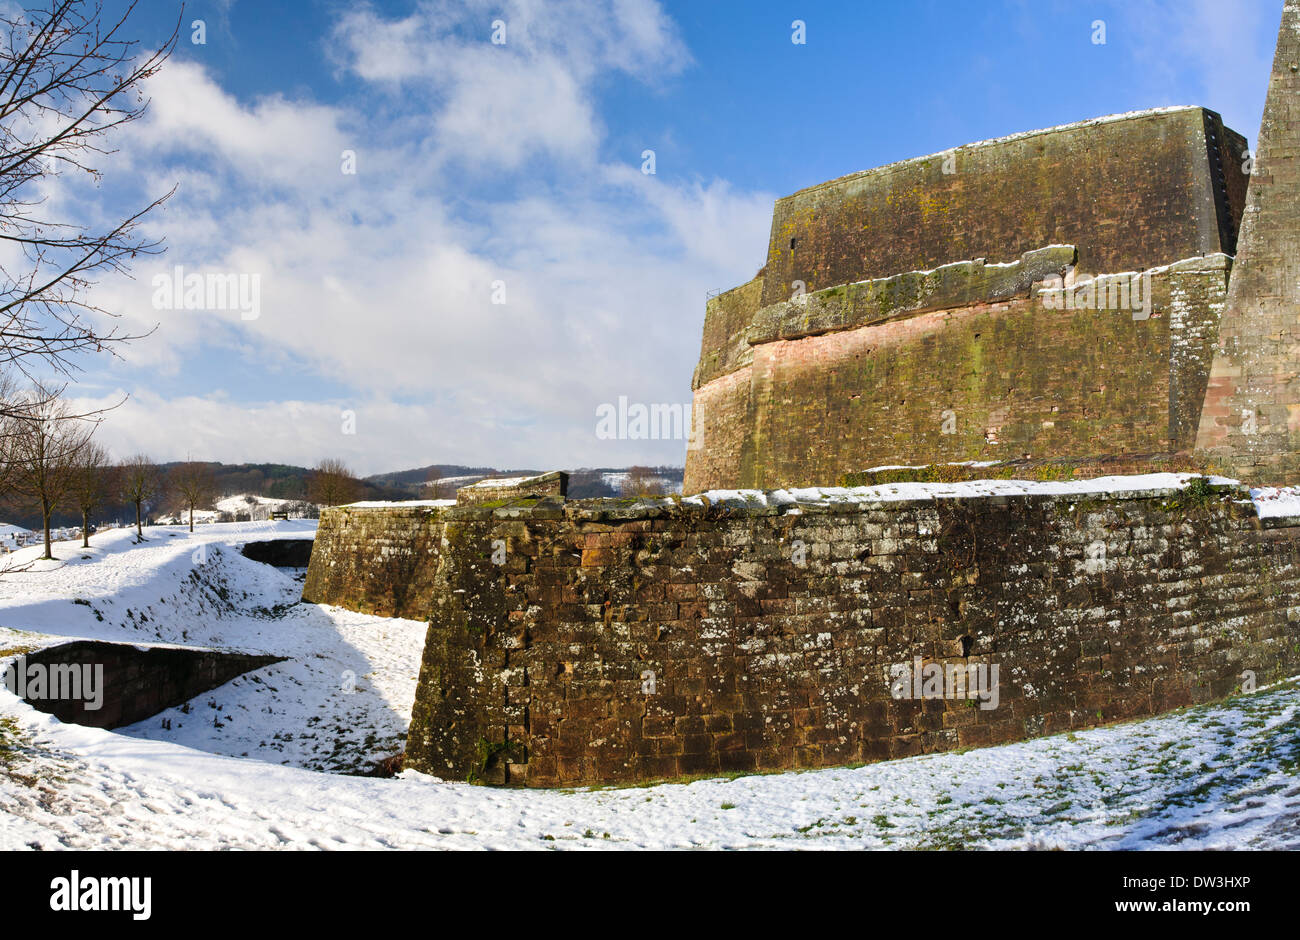 La cittadella alta sopra la città di Bitche in Vosges Parco naturale regionale, nel nord della Francia. Dicembre. Foto Stock